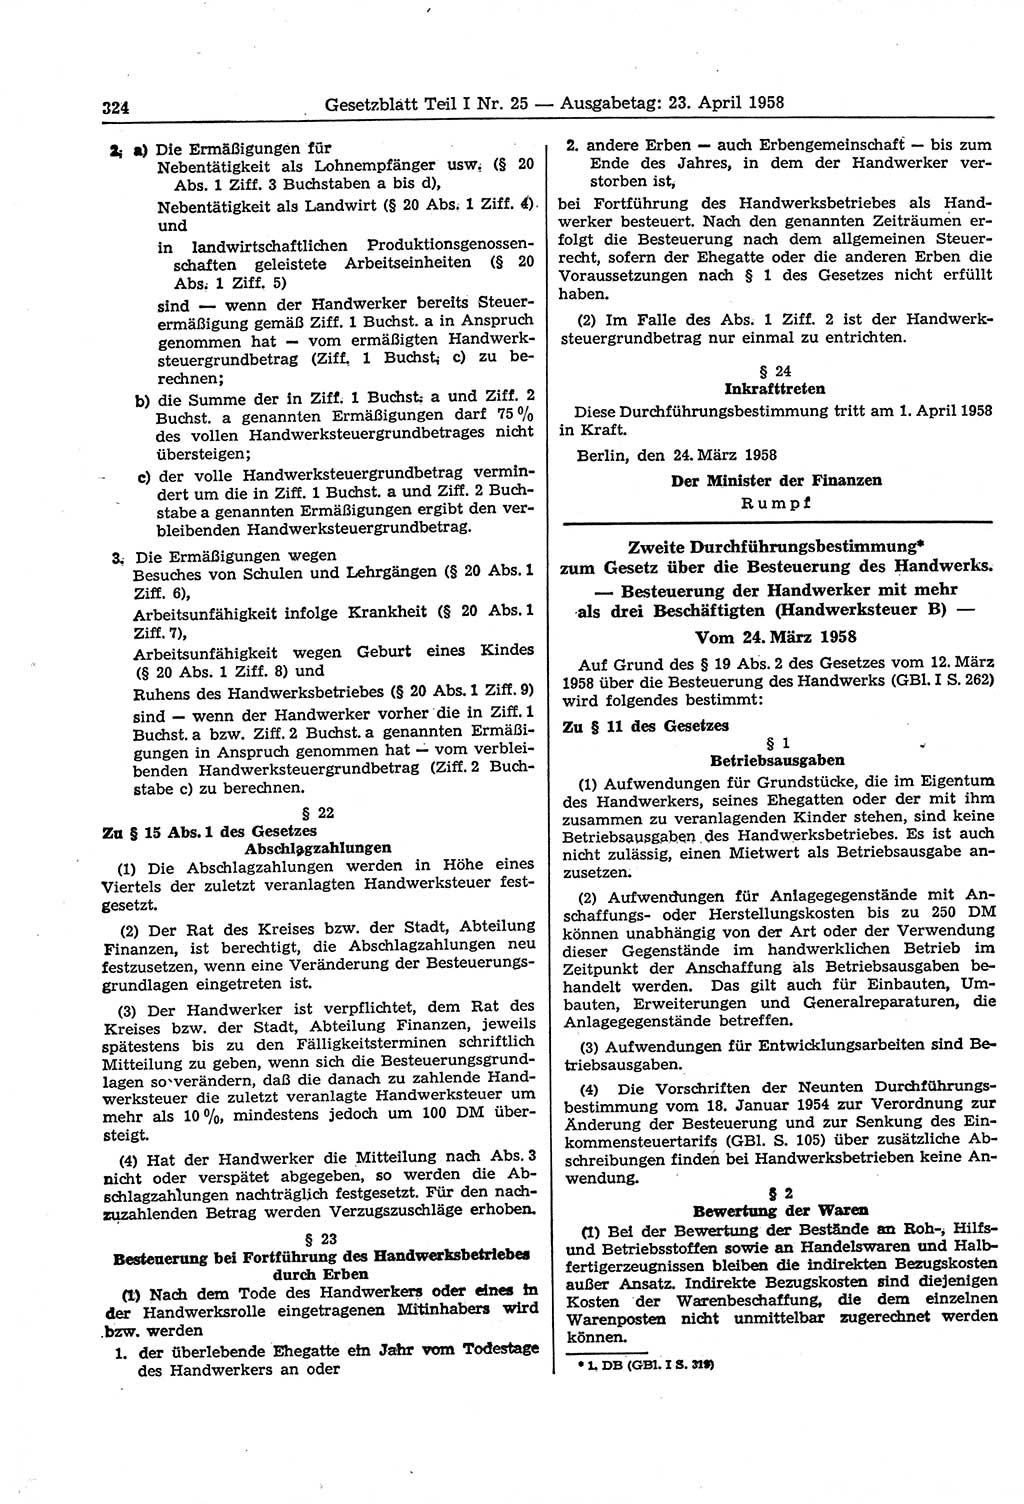 Gesetzblatt (GBl.) der Deutschen Demokratischen Republik (DDR) Teil Ⅰ 1958, Seite 324 (GBl. DDR Ⅰ 1958, S. 324)